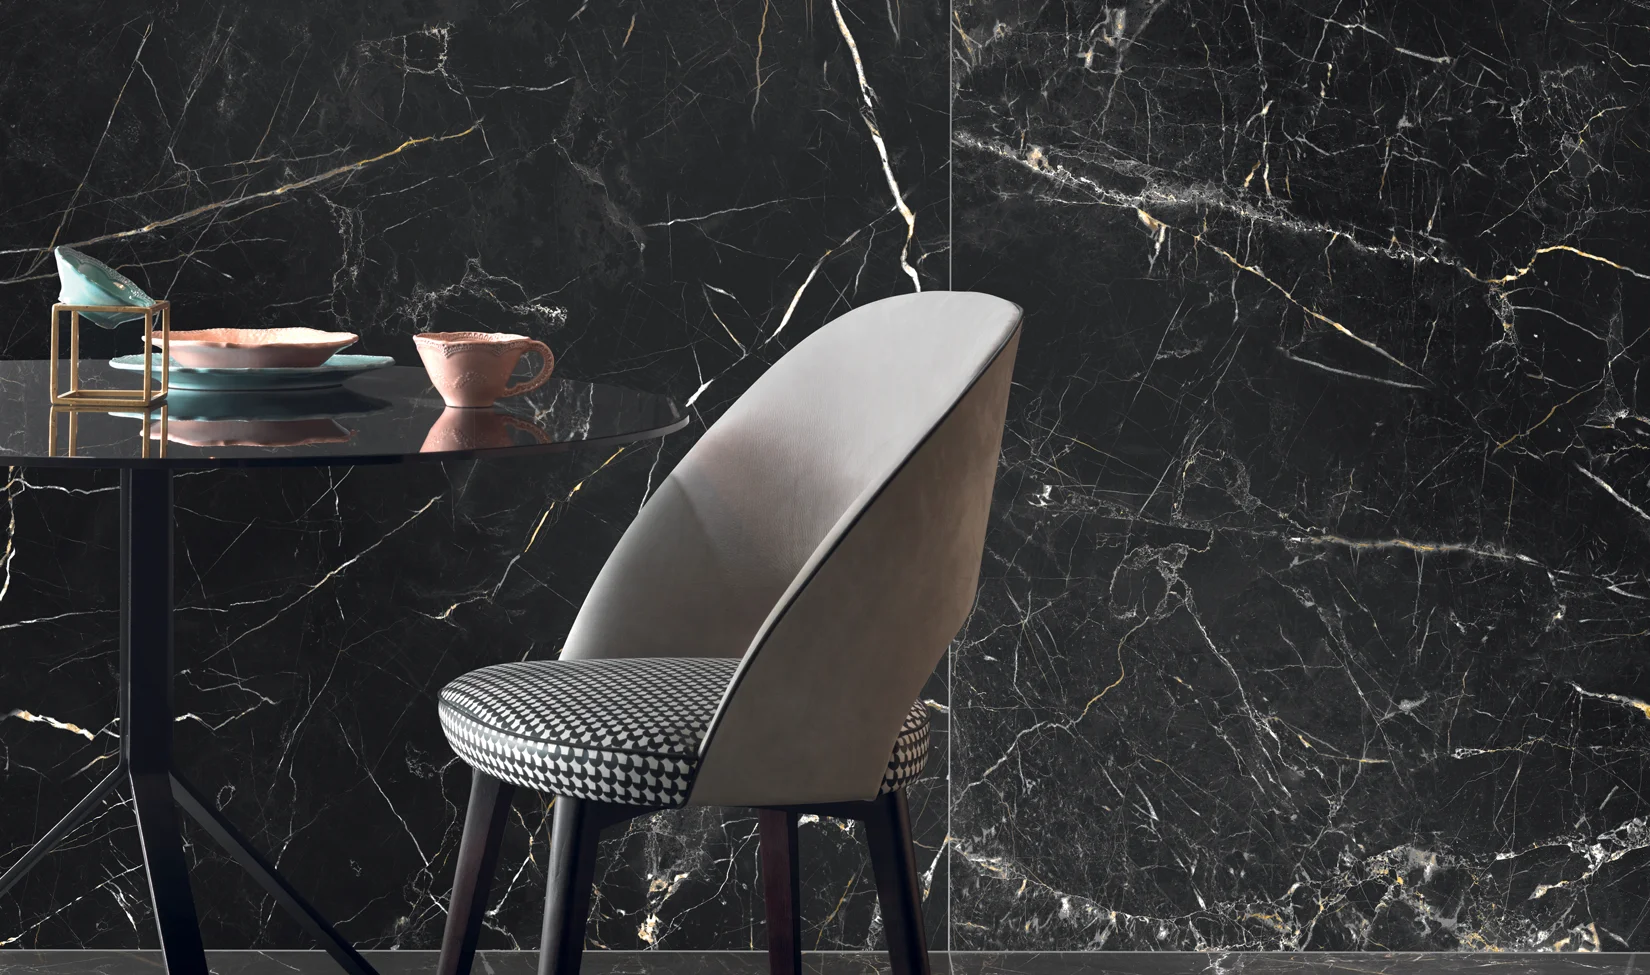 Parete elegante con piastrelle effetto marmo nero Port Laurent della collezione Elements Lux, accostate a mobili di design e illuminazione moderna.